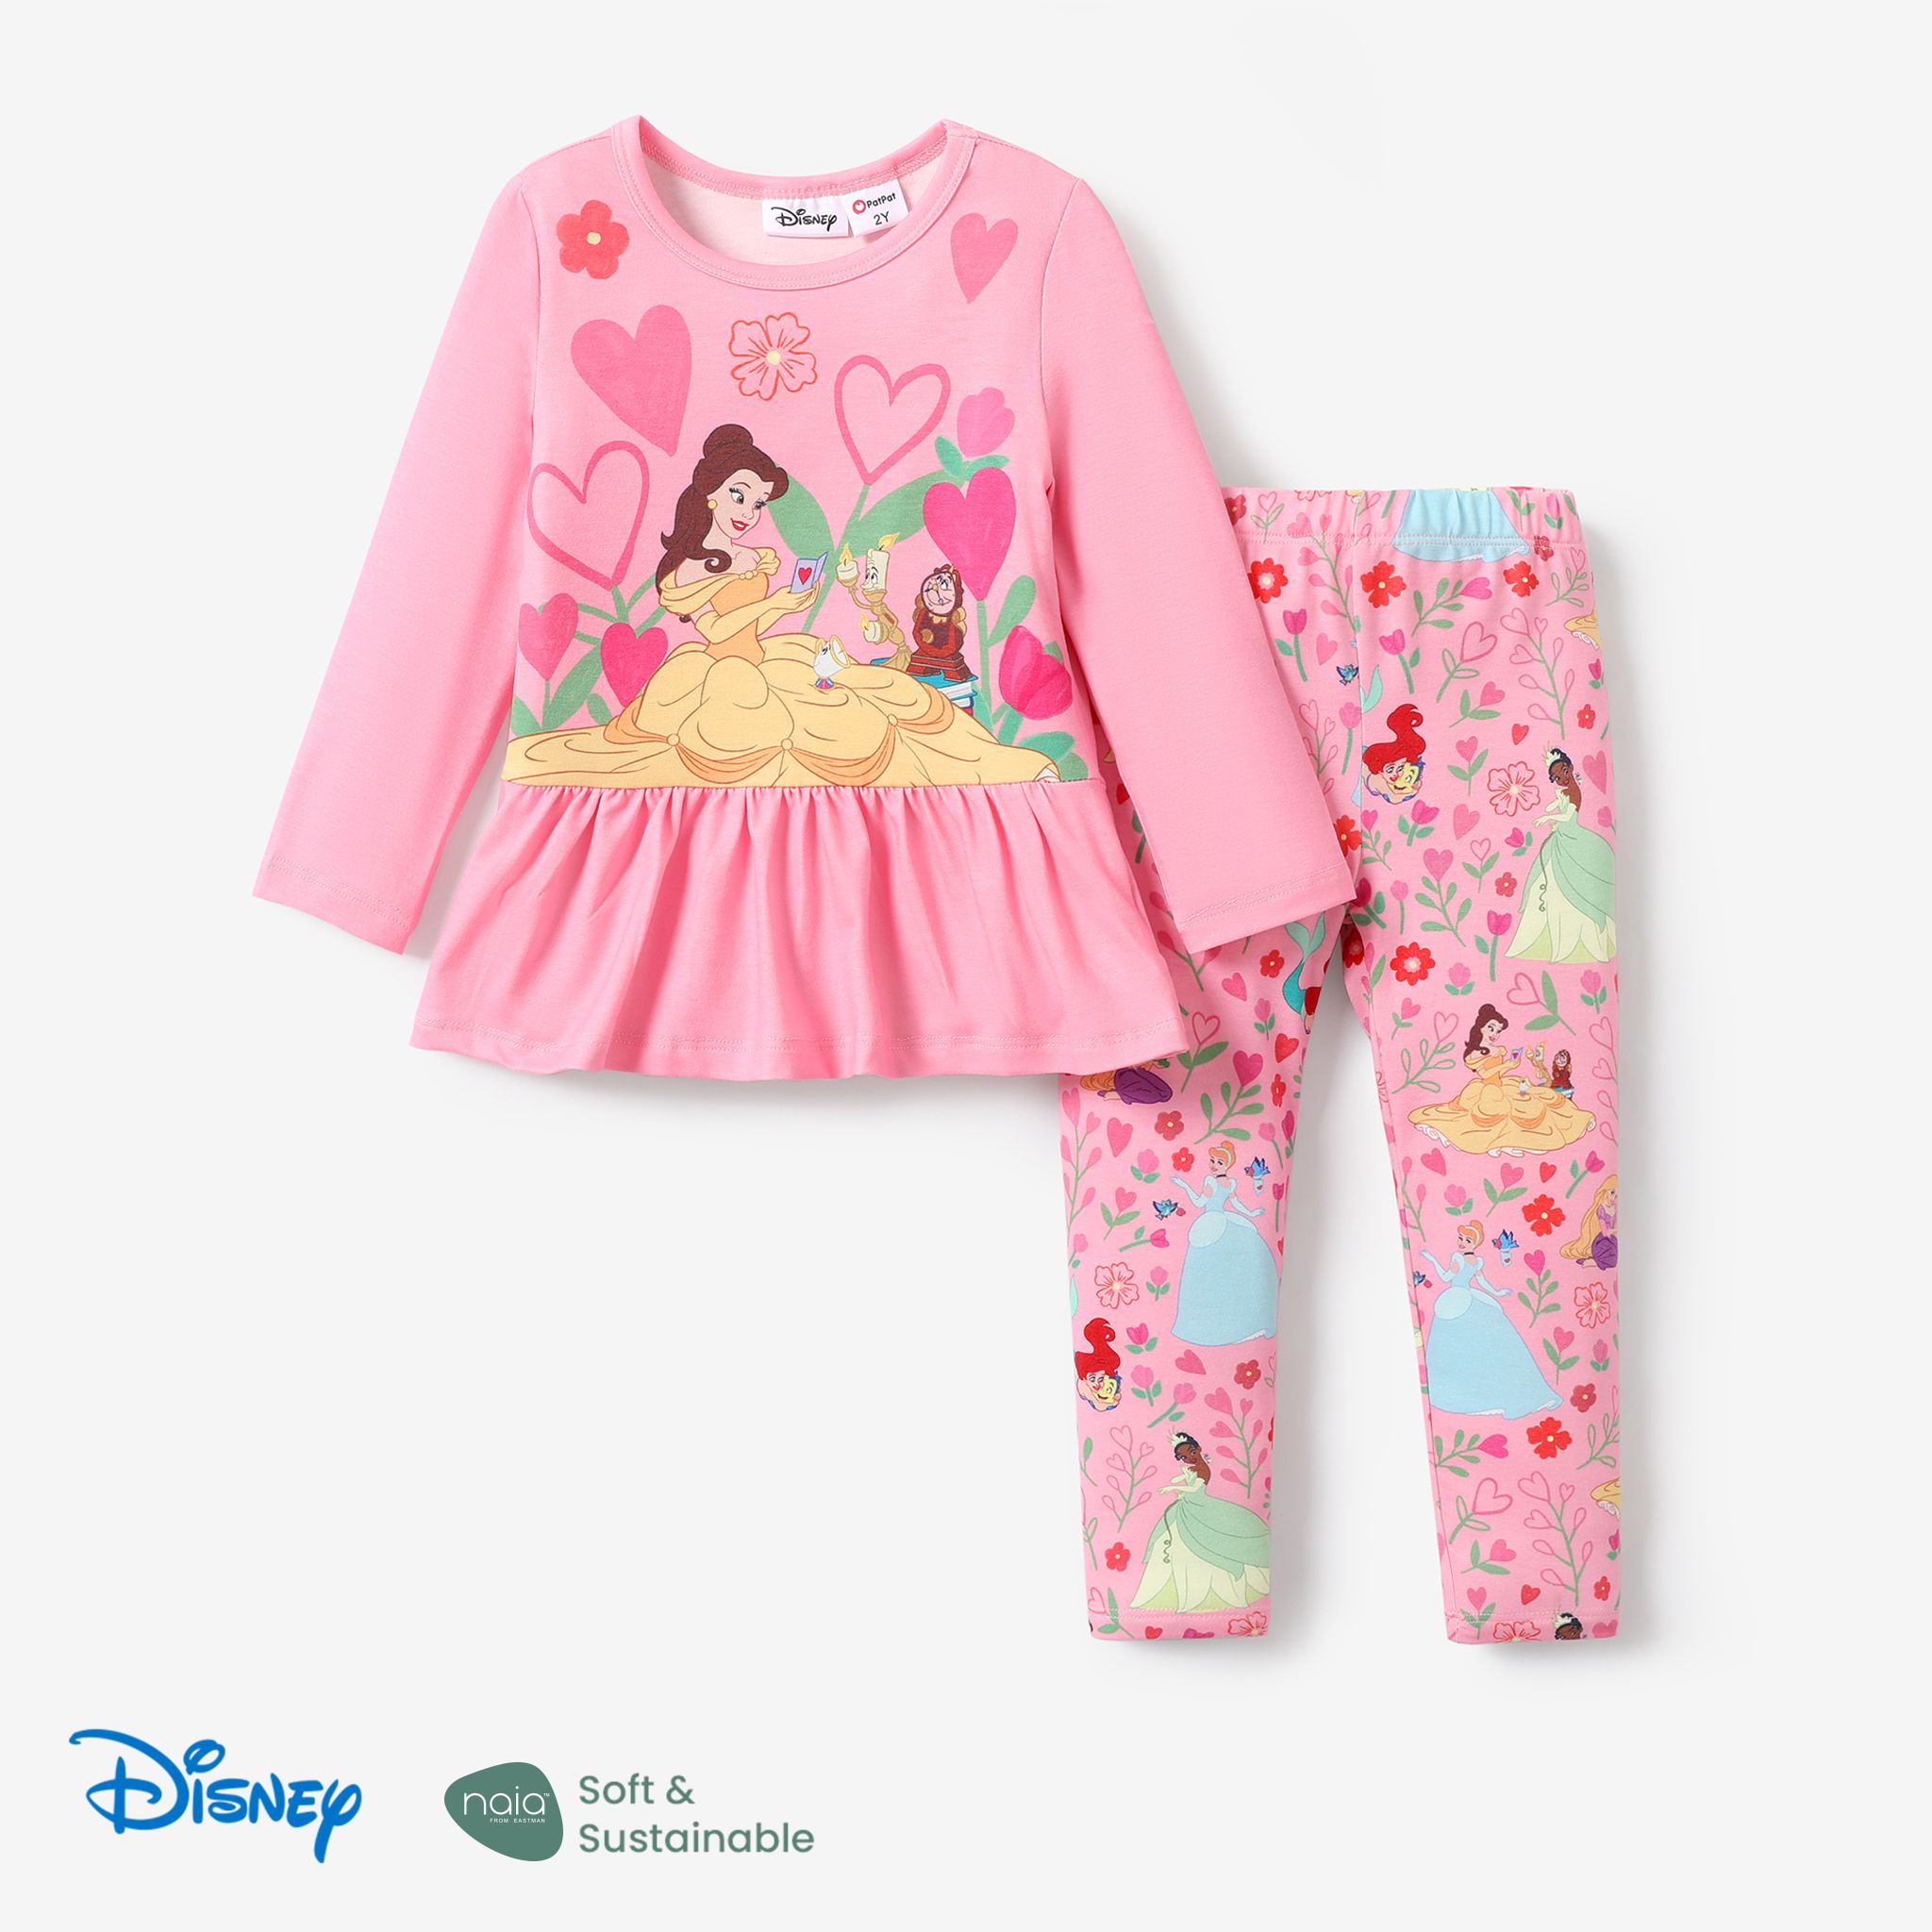 Disney Princess 2pcs Toddler Girl Set With Ruffle Edge